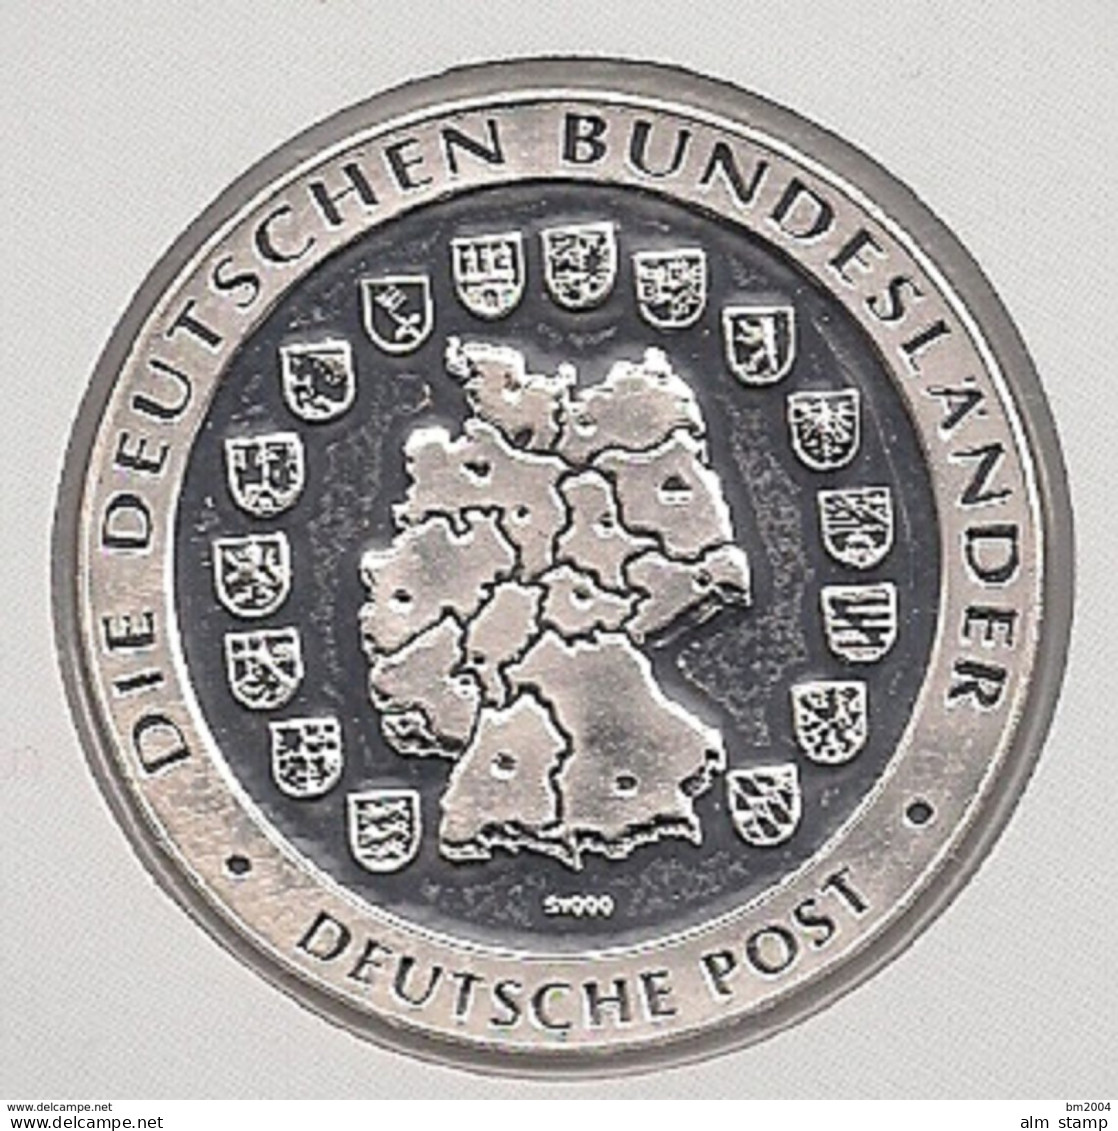 999/1000 Silber Medaille " Brandenburg  " PP   36 Mm DMR Rohgewicht : 14 G Prägung : Hochrelief - Souvenir-Medaille (elongated Coins)